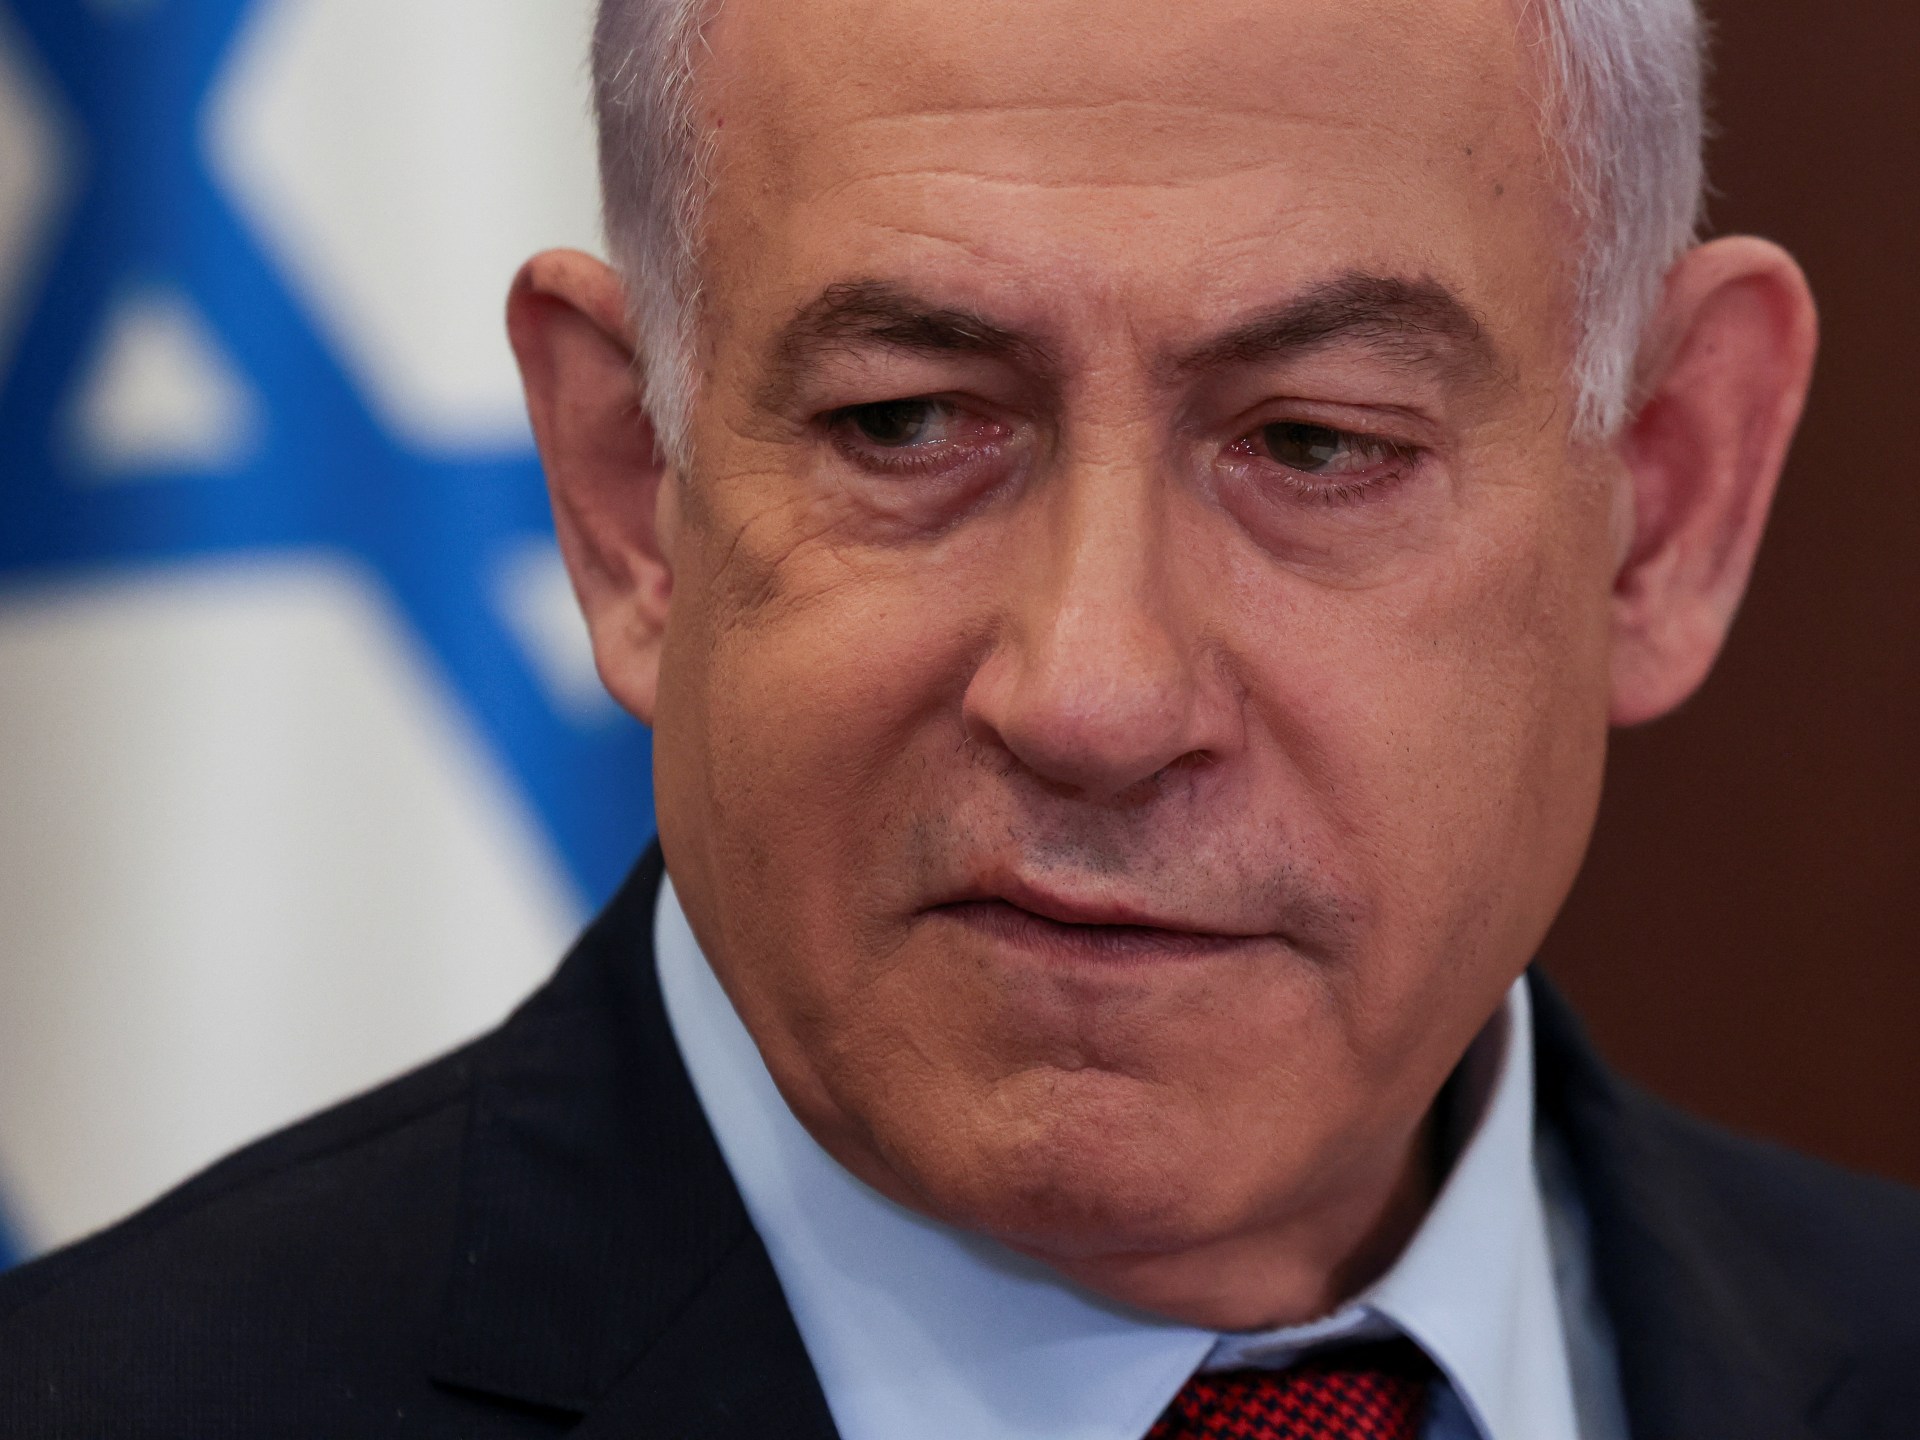 Netanyahu accenna ad un nuovo accordo in corso per il rilascio degli ostaggi a Gaza  Notizie sul conflitto israelo-palestinese